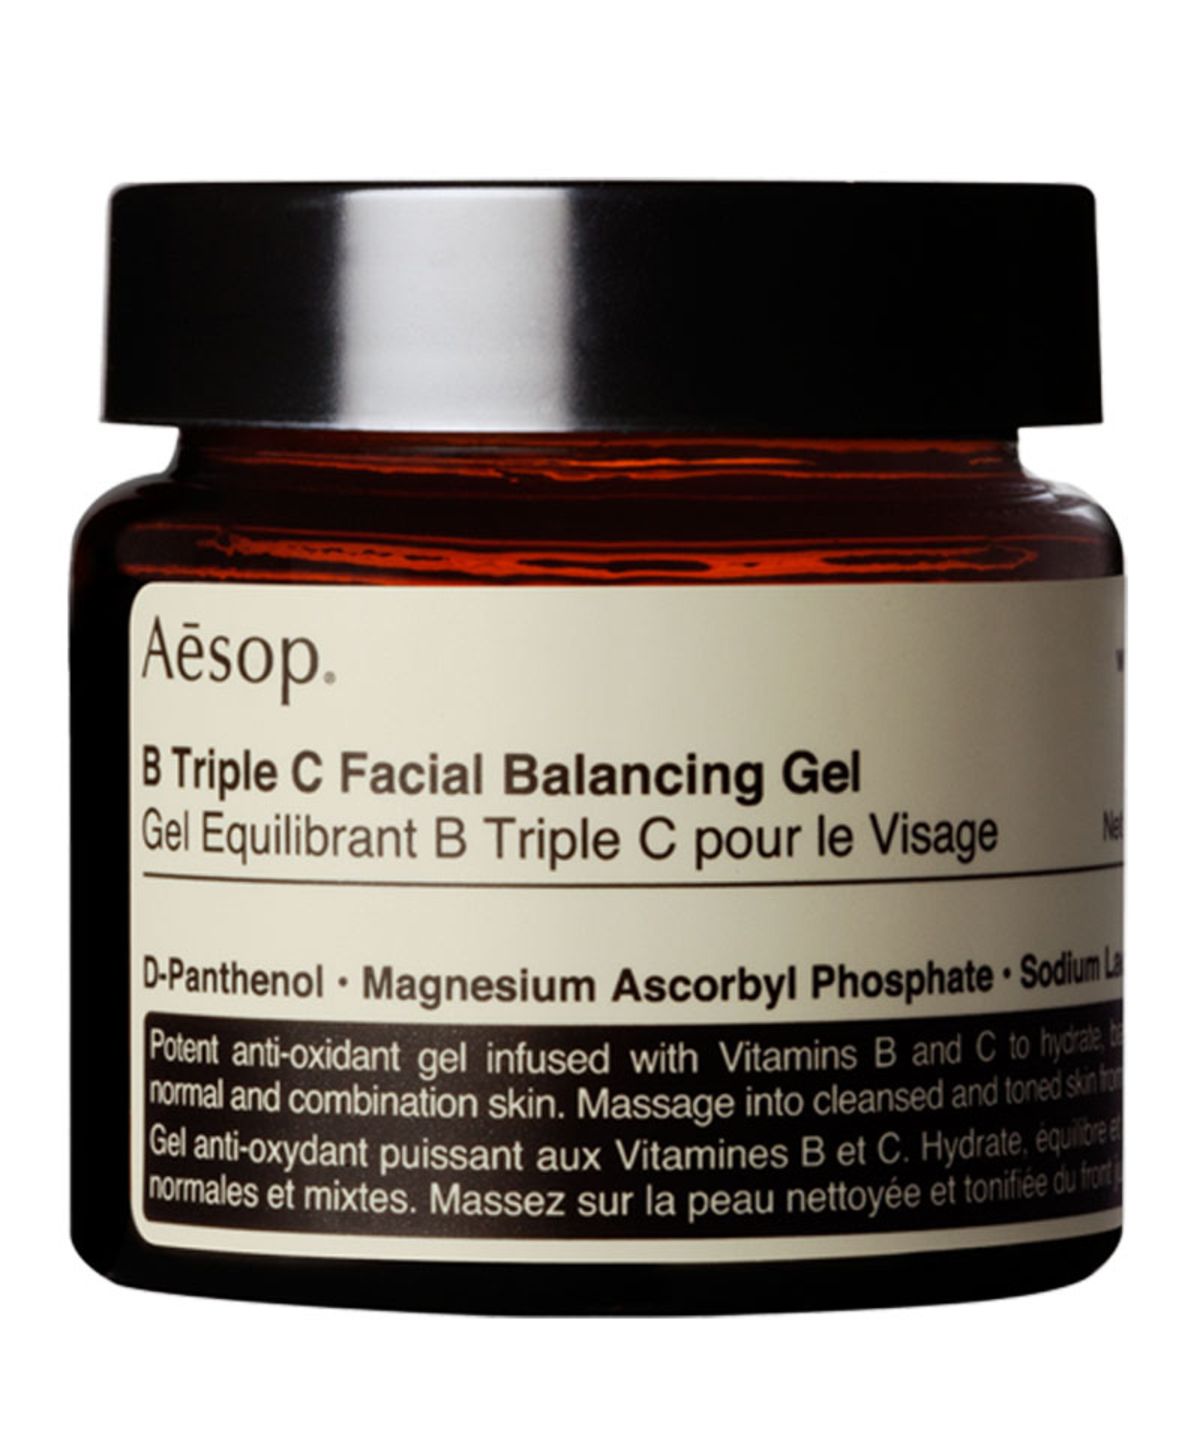 aesop b triple c facial balancing gel